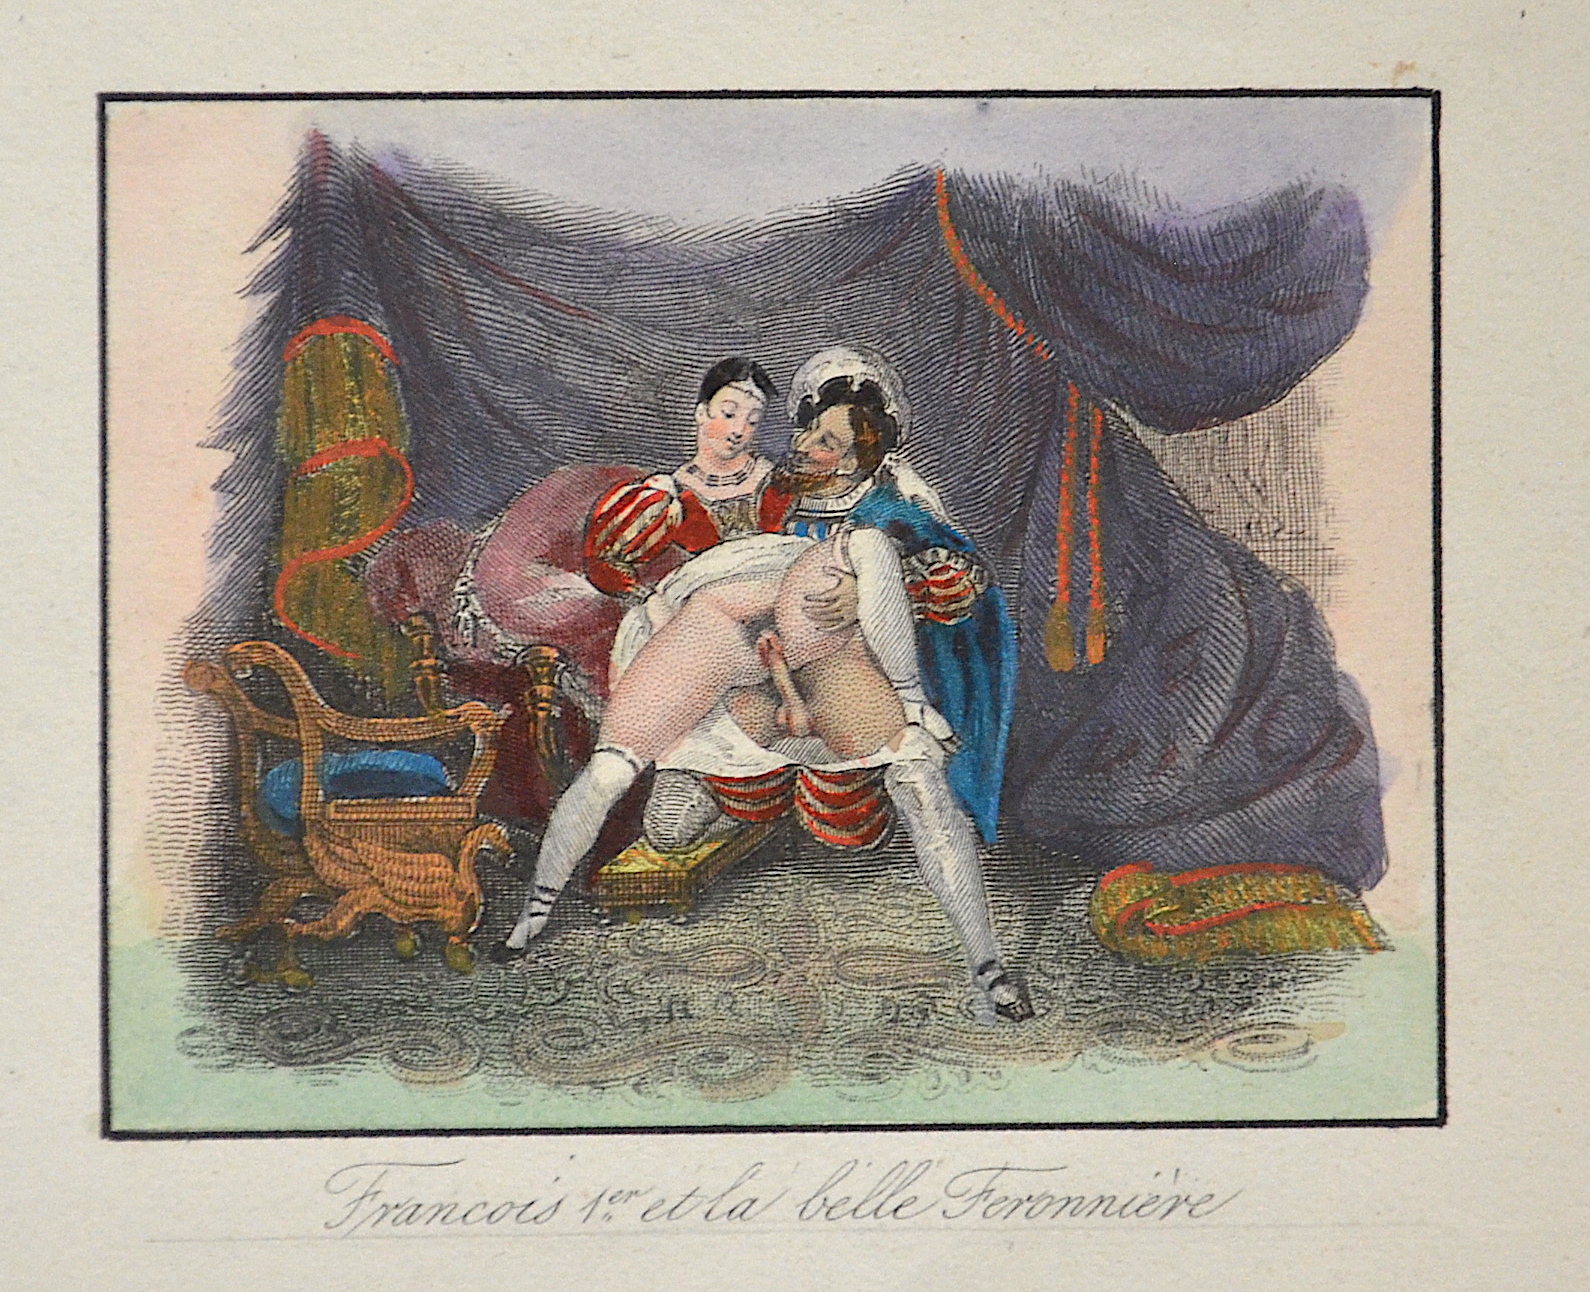 Anonymus  Francois Ier et la belle Feronniere